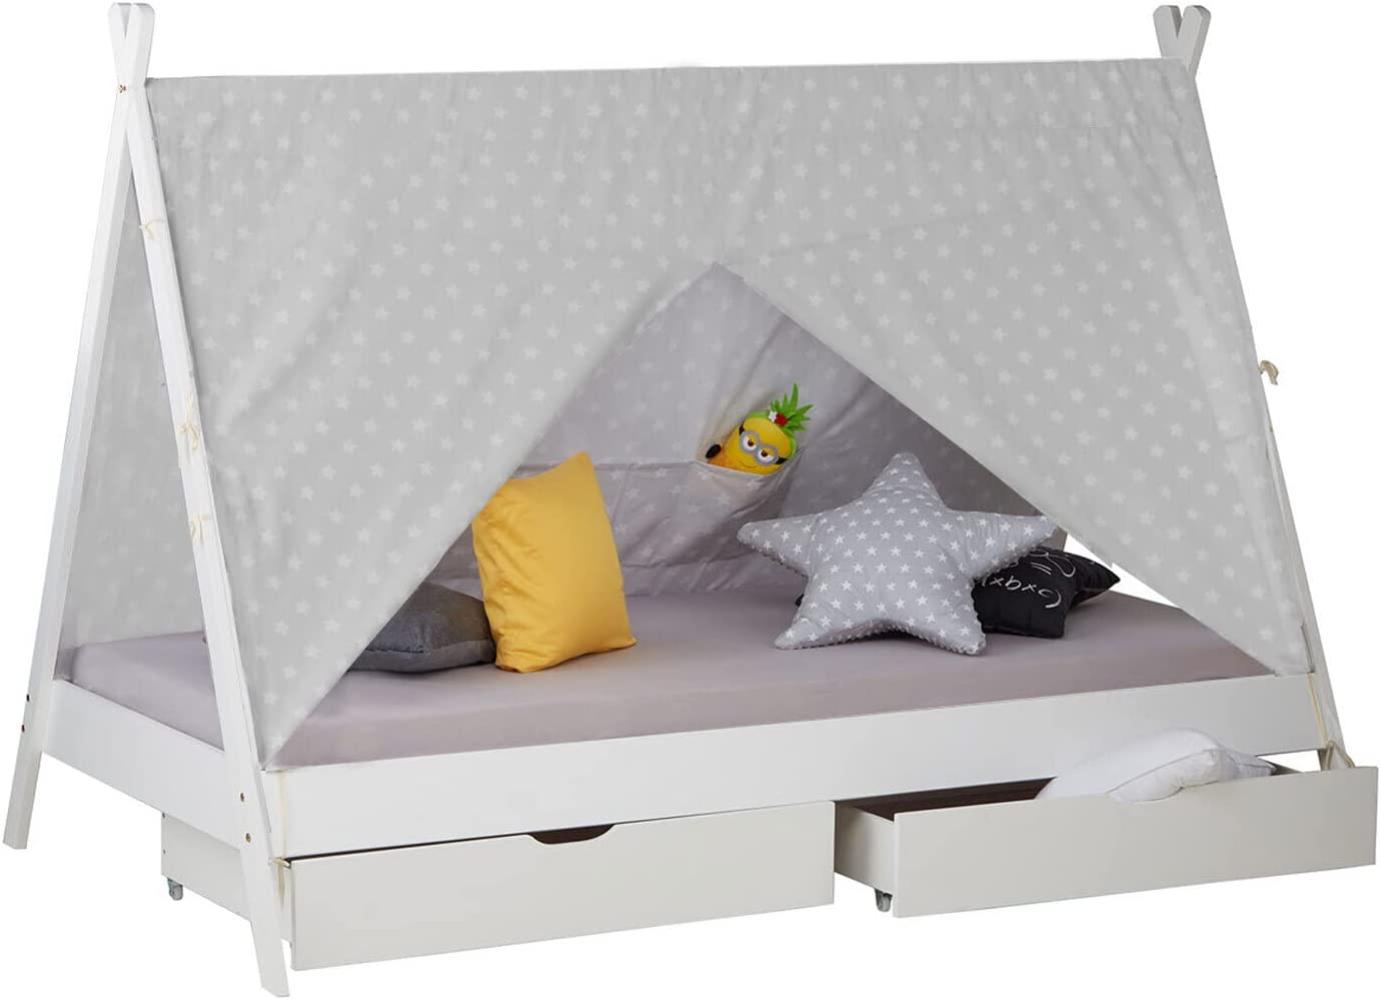 Kinderbett mit Matratze TIPI 90x200 mit 2 Bettkästen Weiß Holzbett Indianer Bett Hausbett Spielbett Bild 1